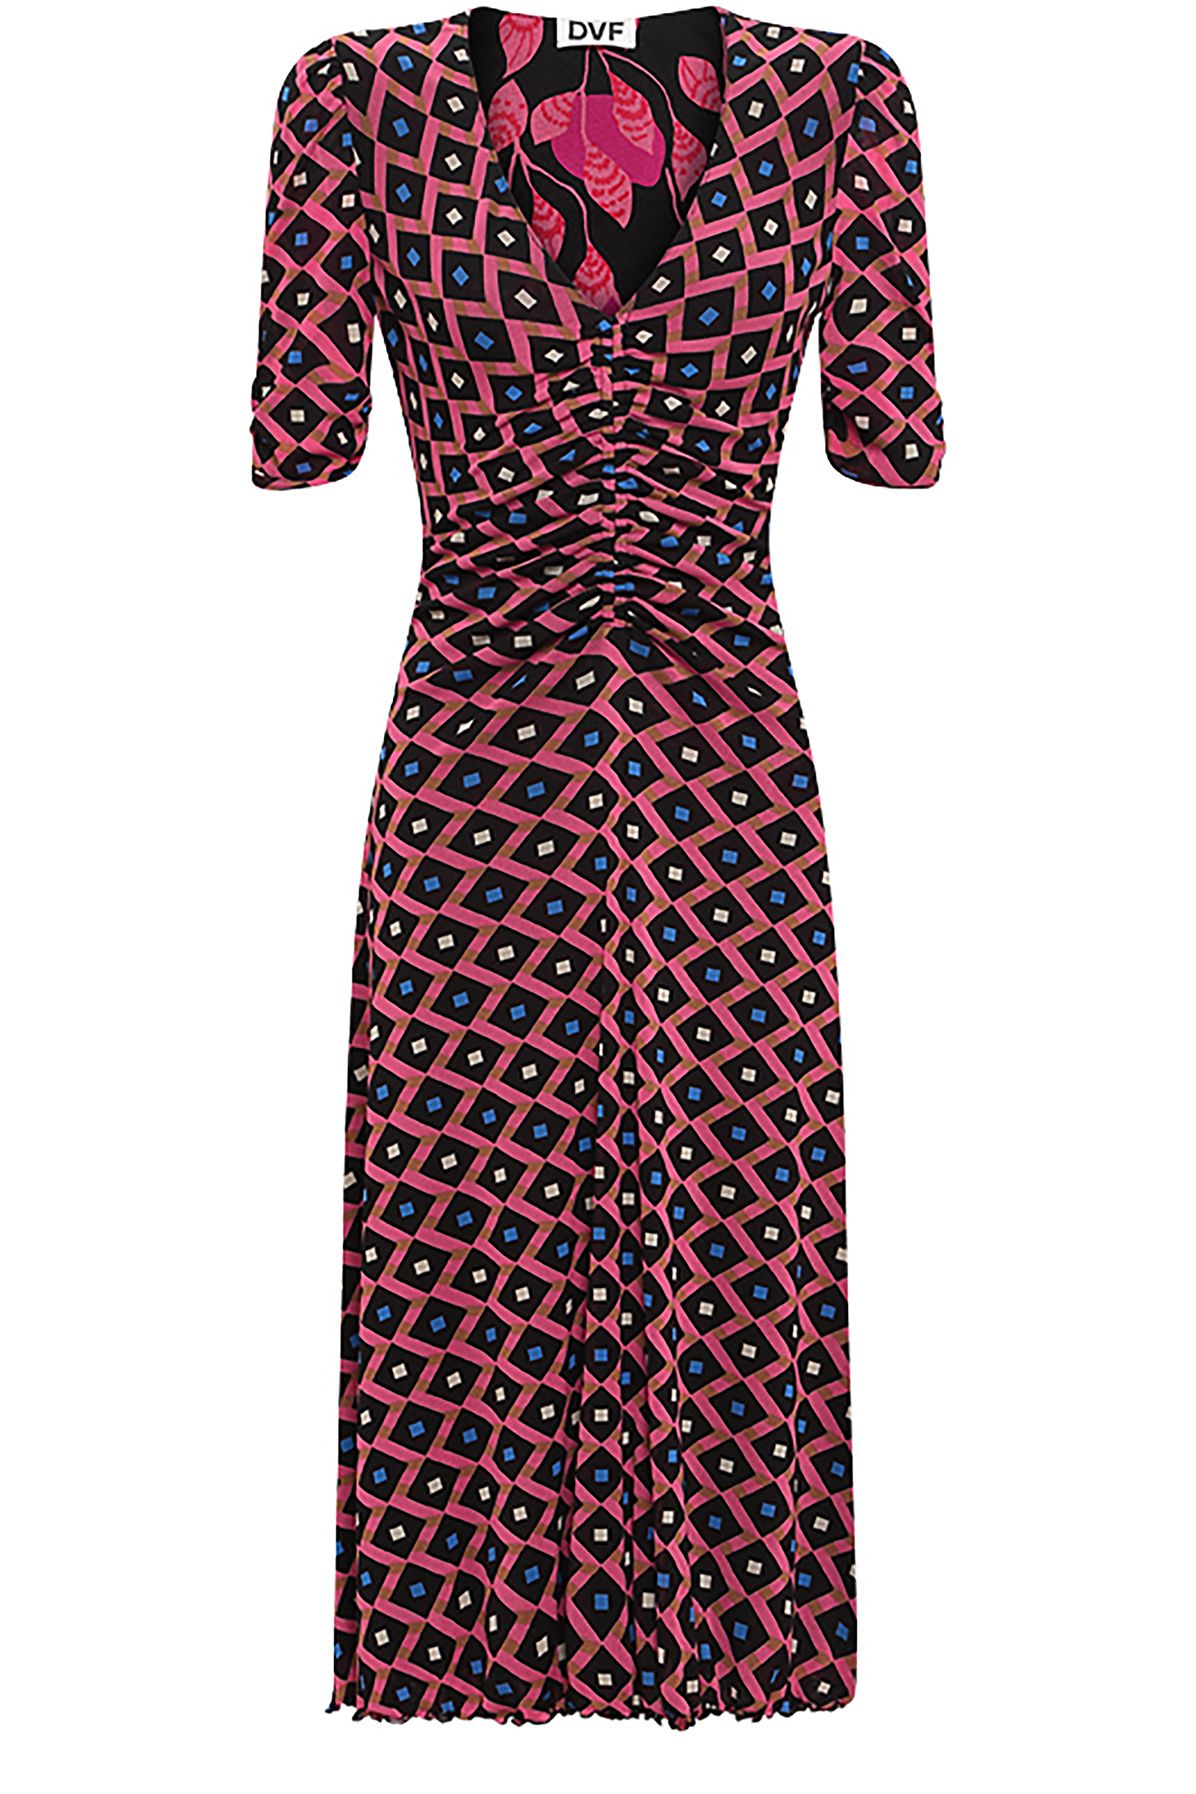 Diane Von Furstenberg Koren reversible dress